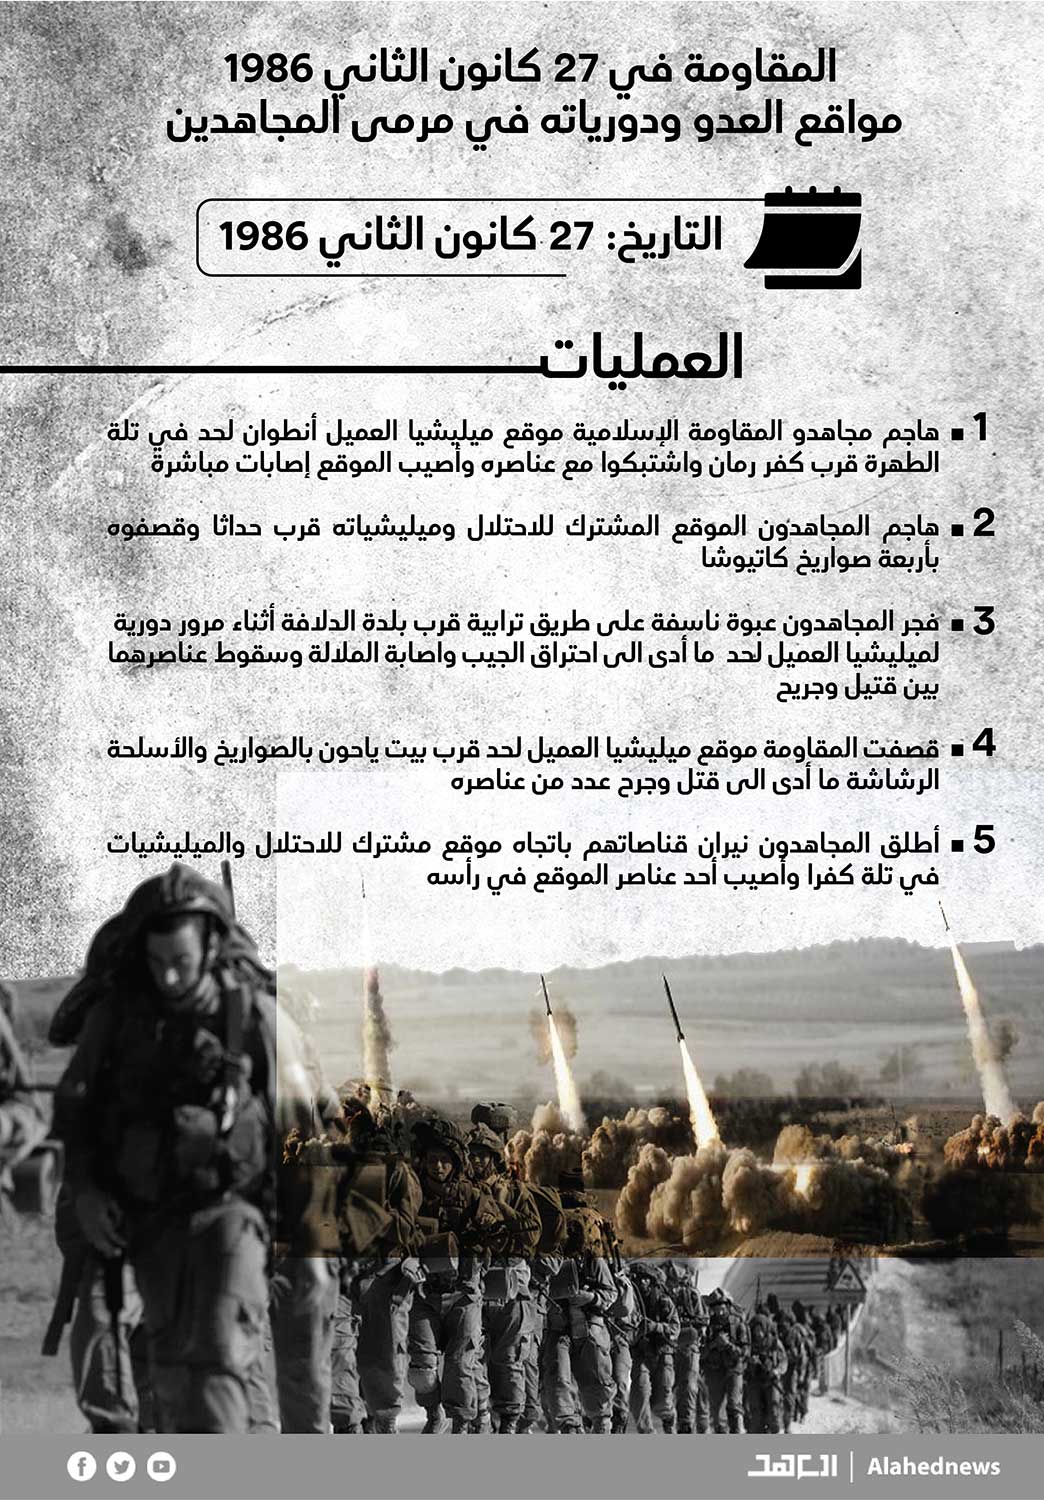 المقاومة في 27 كانون الثاني 1986: مواقع العدو ودورياته في مرمى المجاهدين